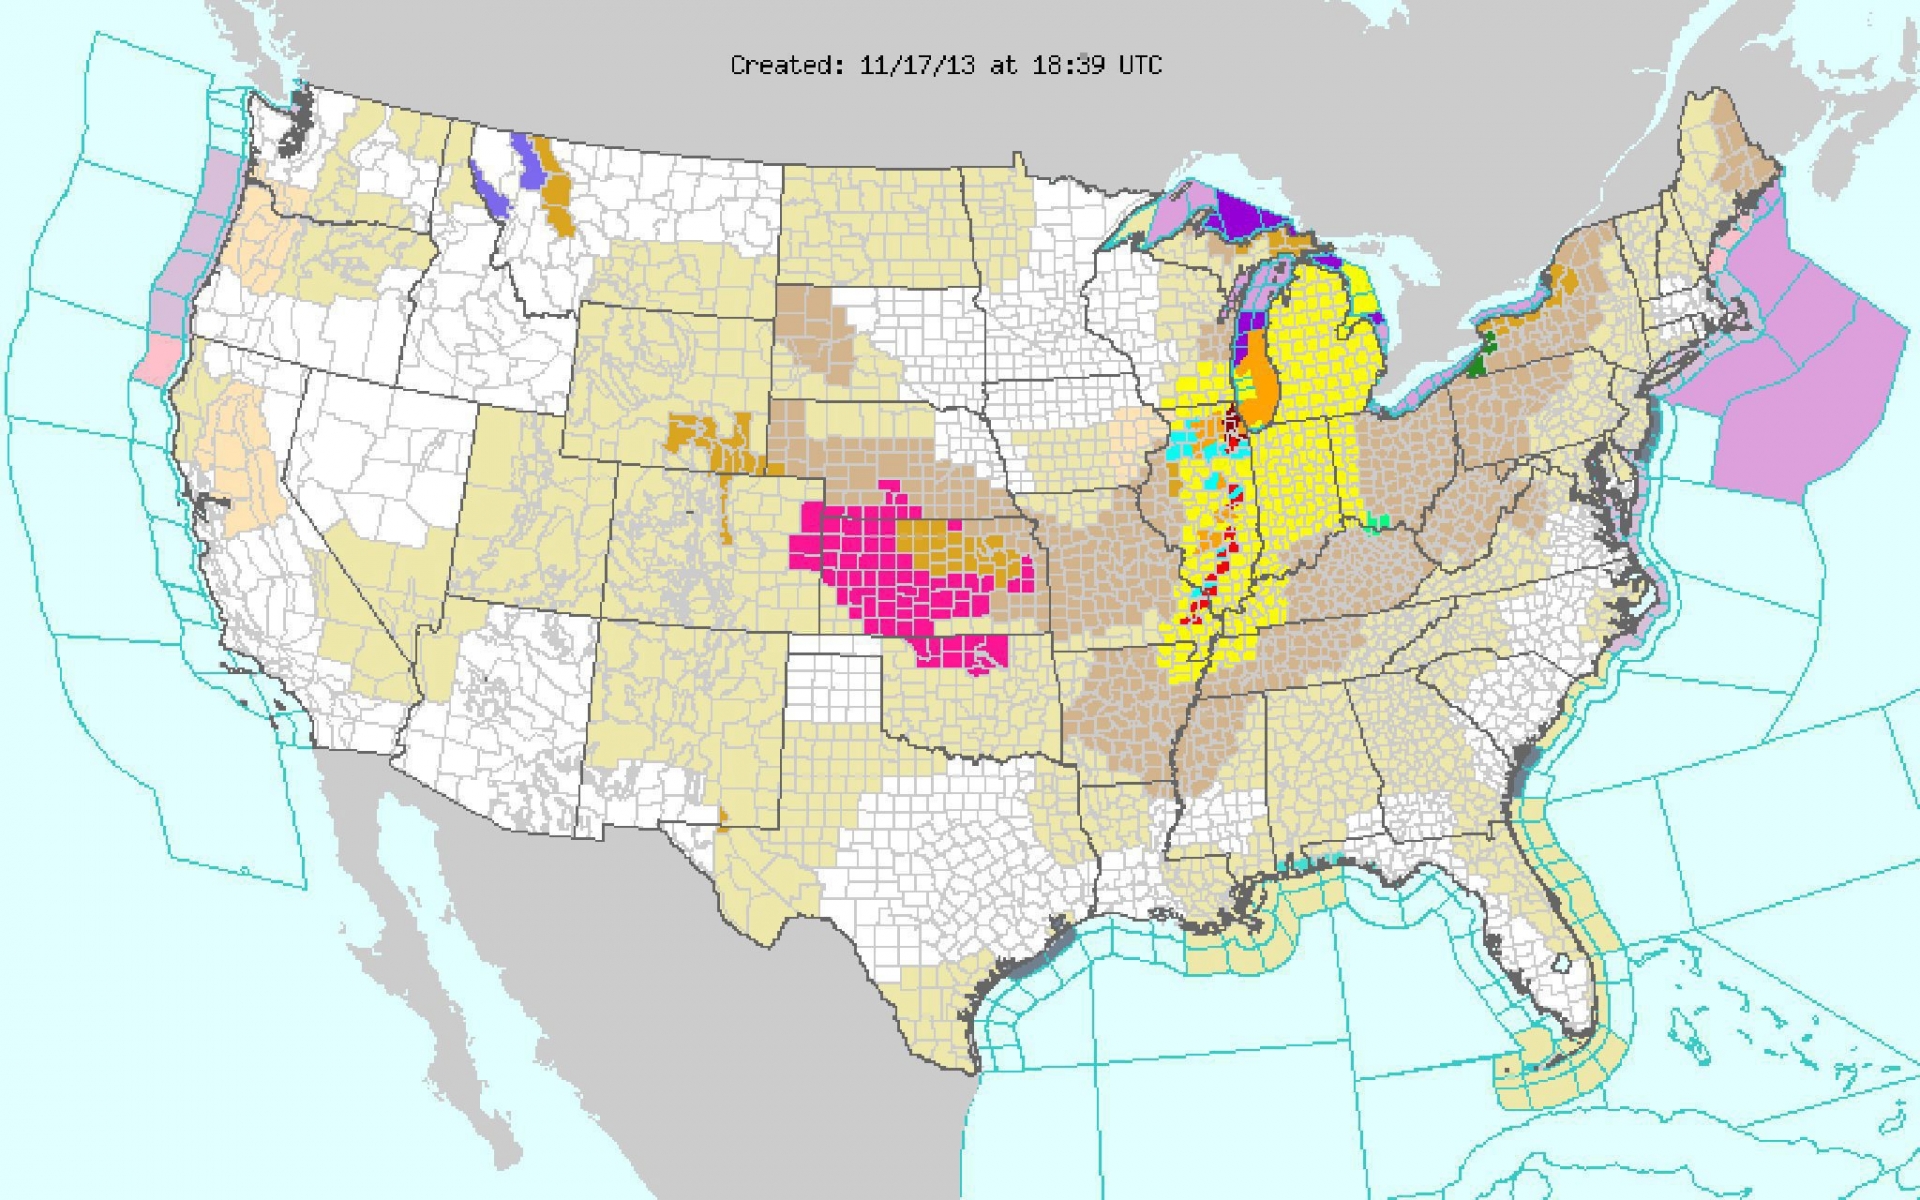 Une carte des prévisions météorologiques publiée par l'US National Weather Service le 17 November 2013.